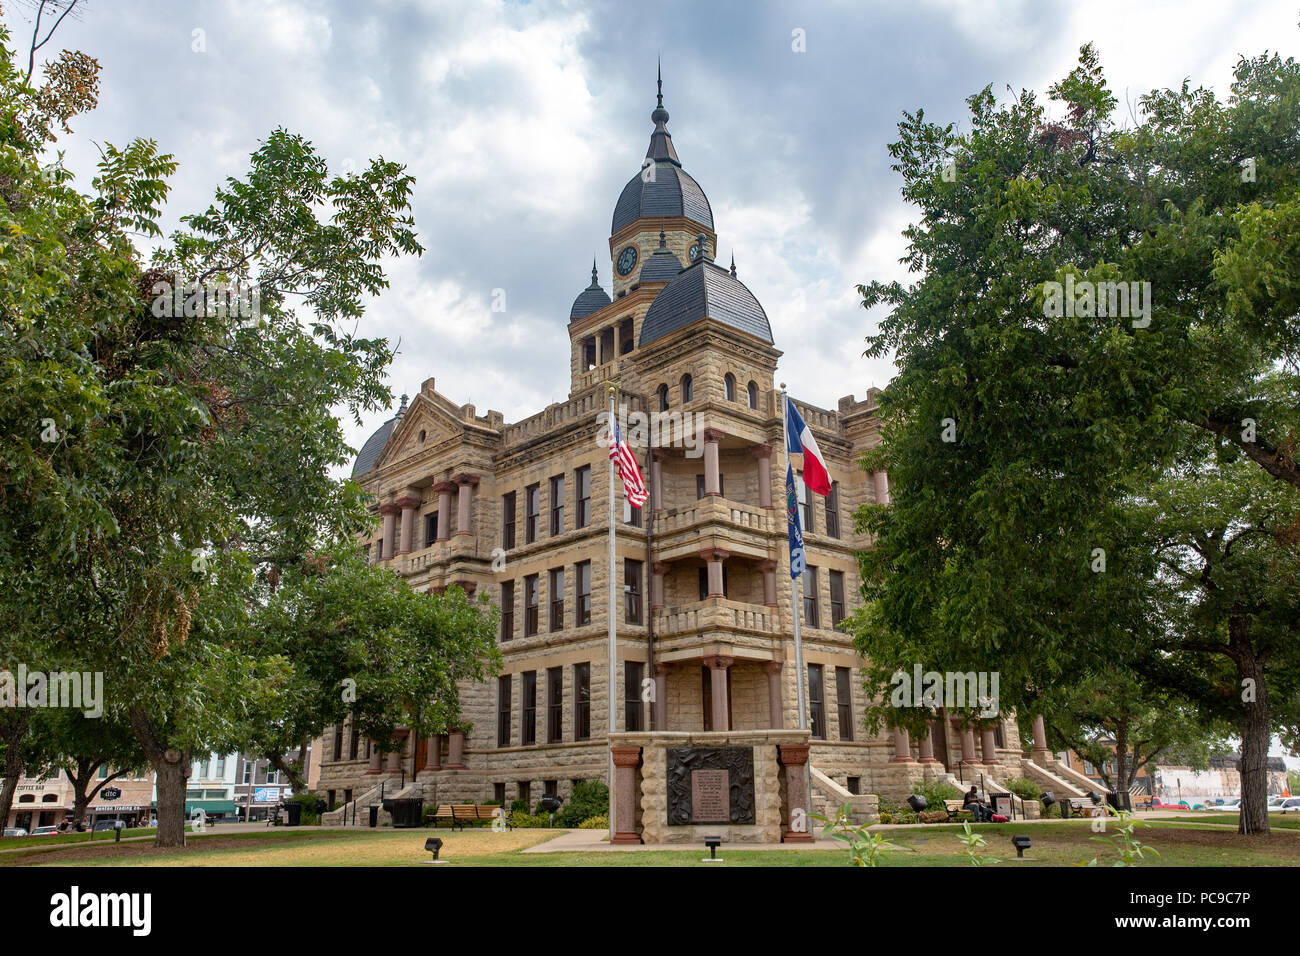 Le palais de justice du comté de Denton 1896 historique situé dans la région de Denton Texas construit en style néo-roman Banque D'Images